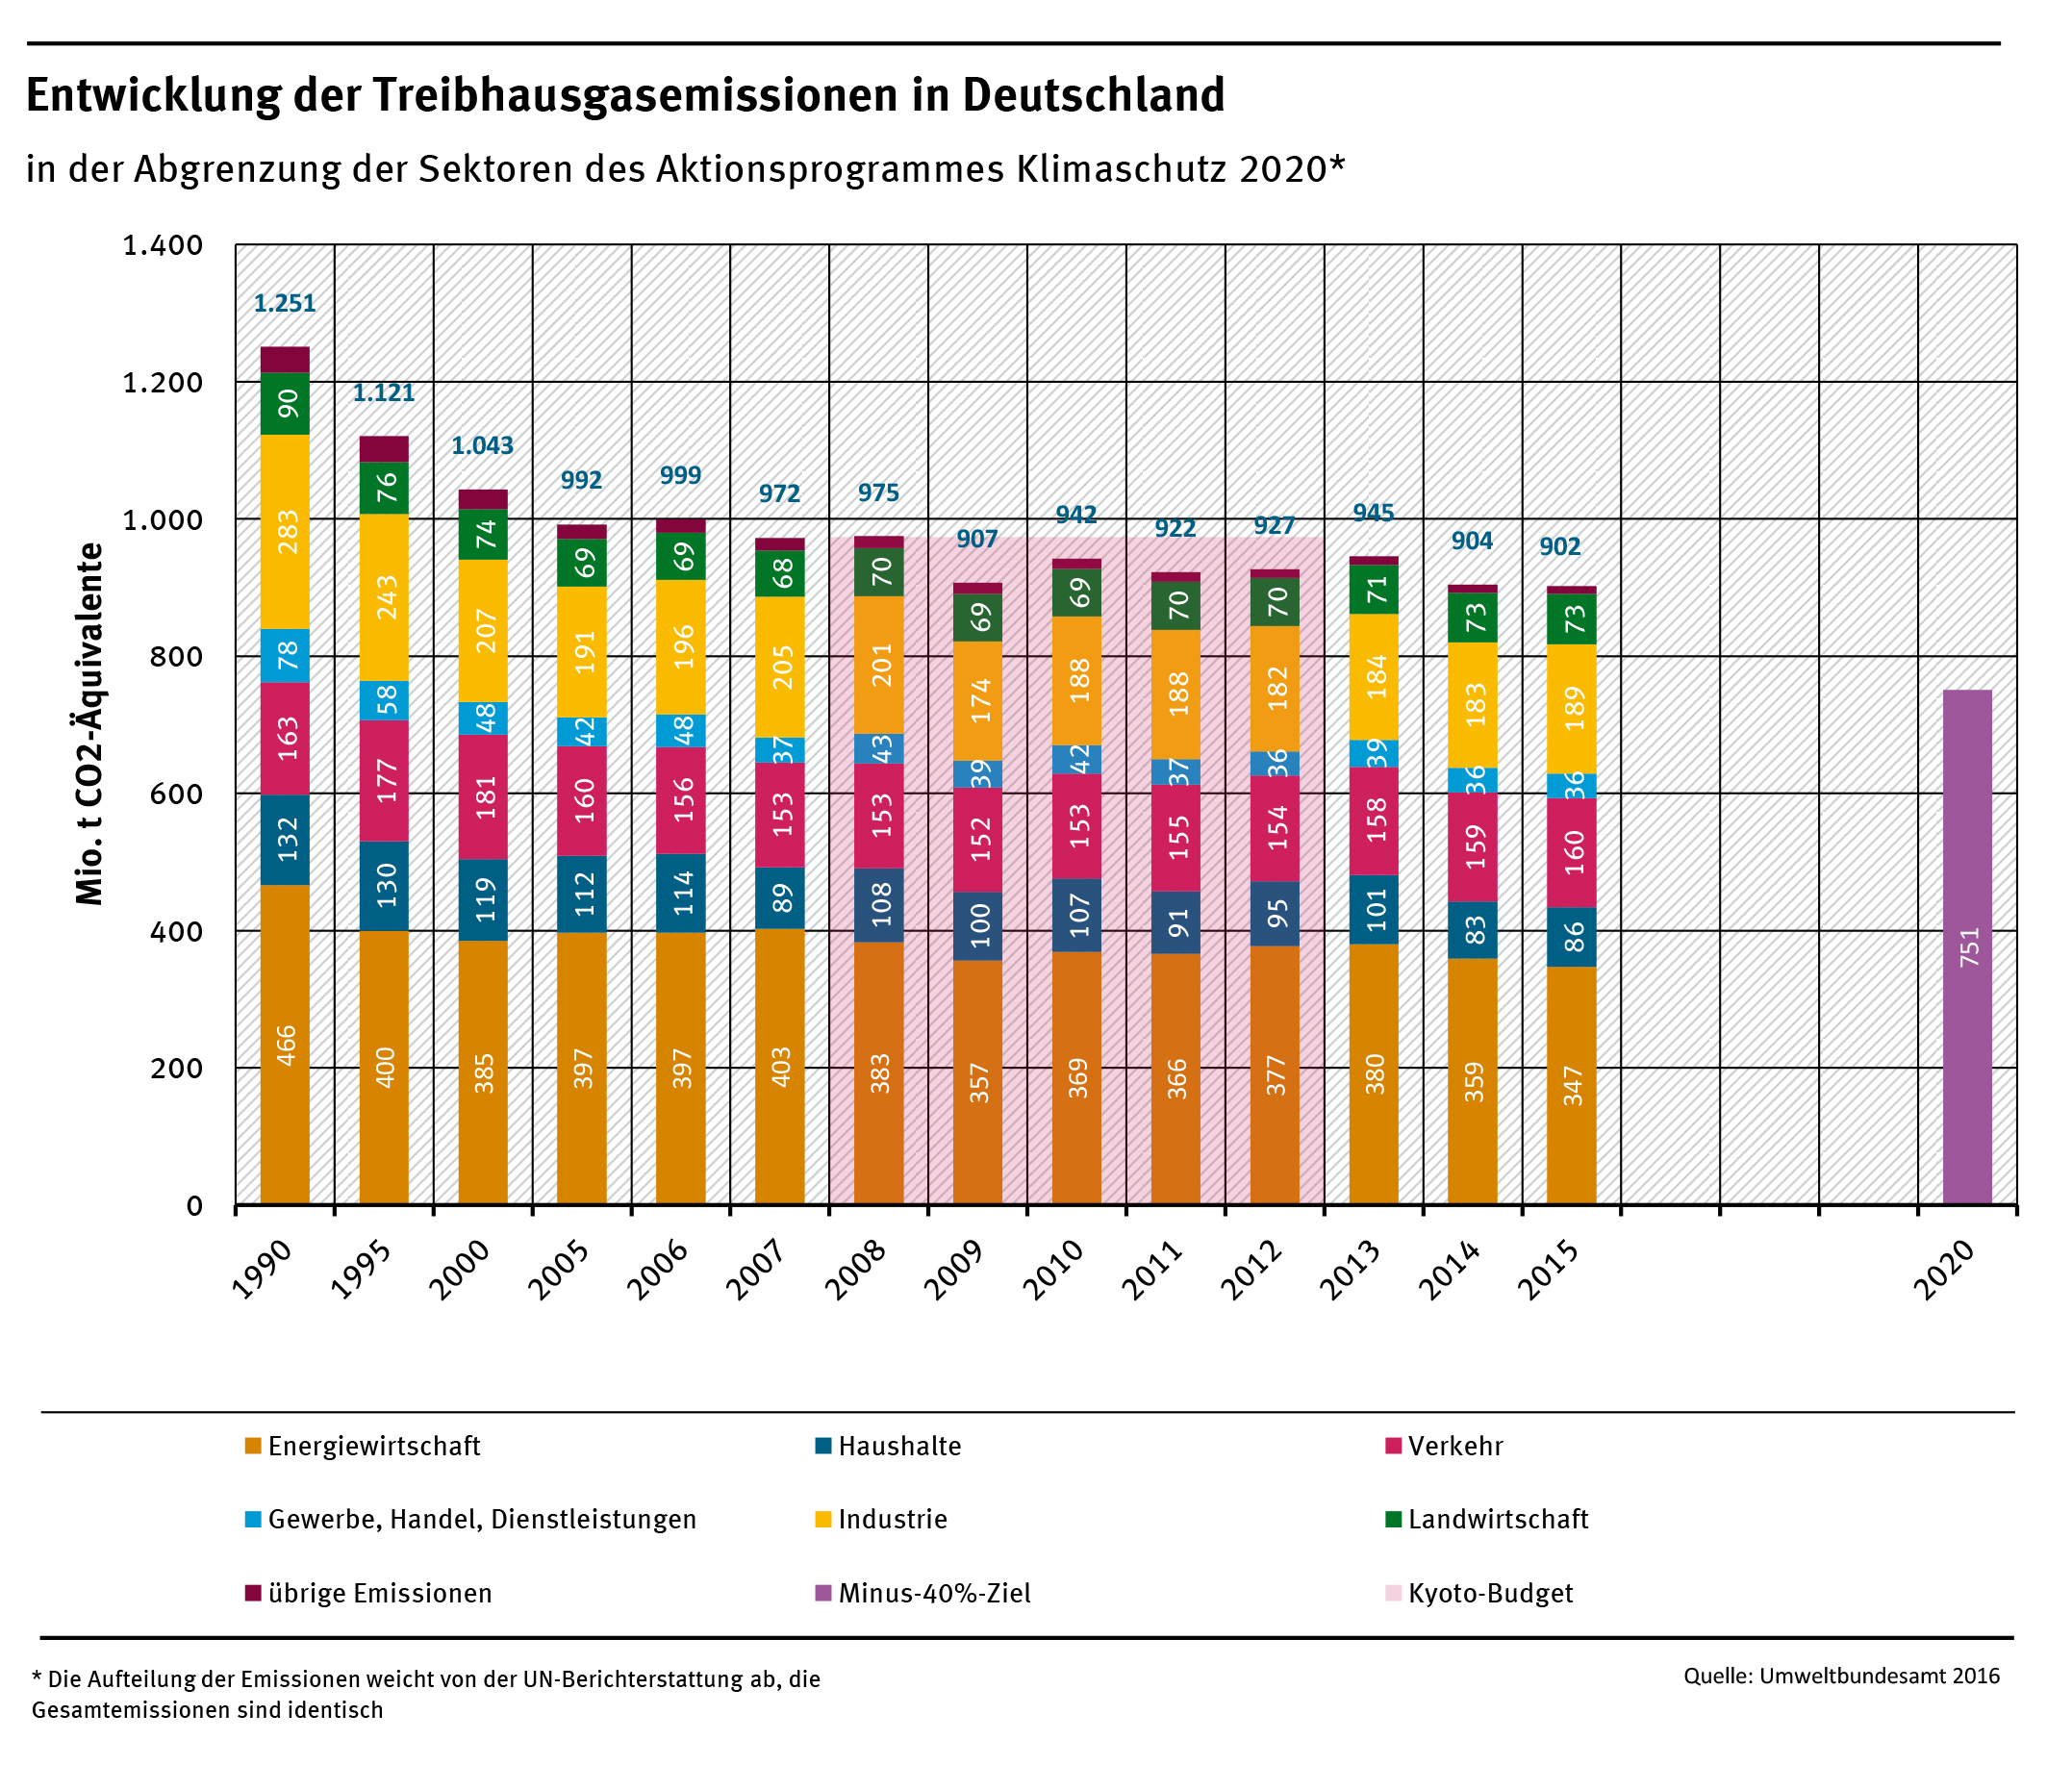 Entwicklung der THG-Emissionen in Deutschland nach Sektoren